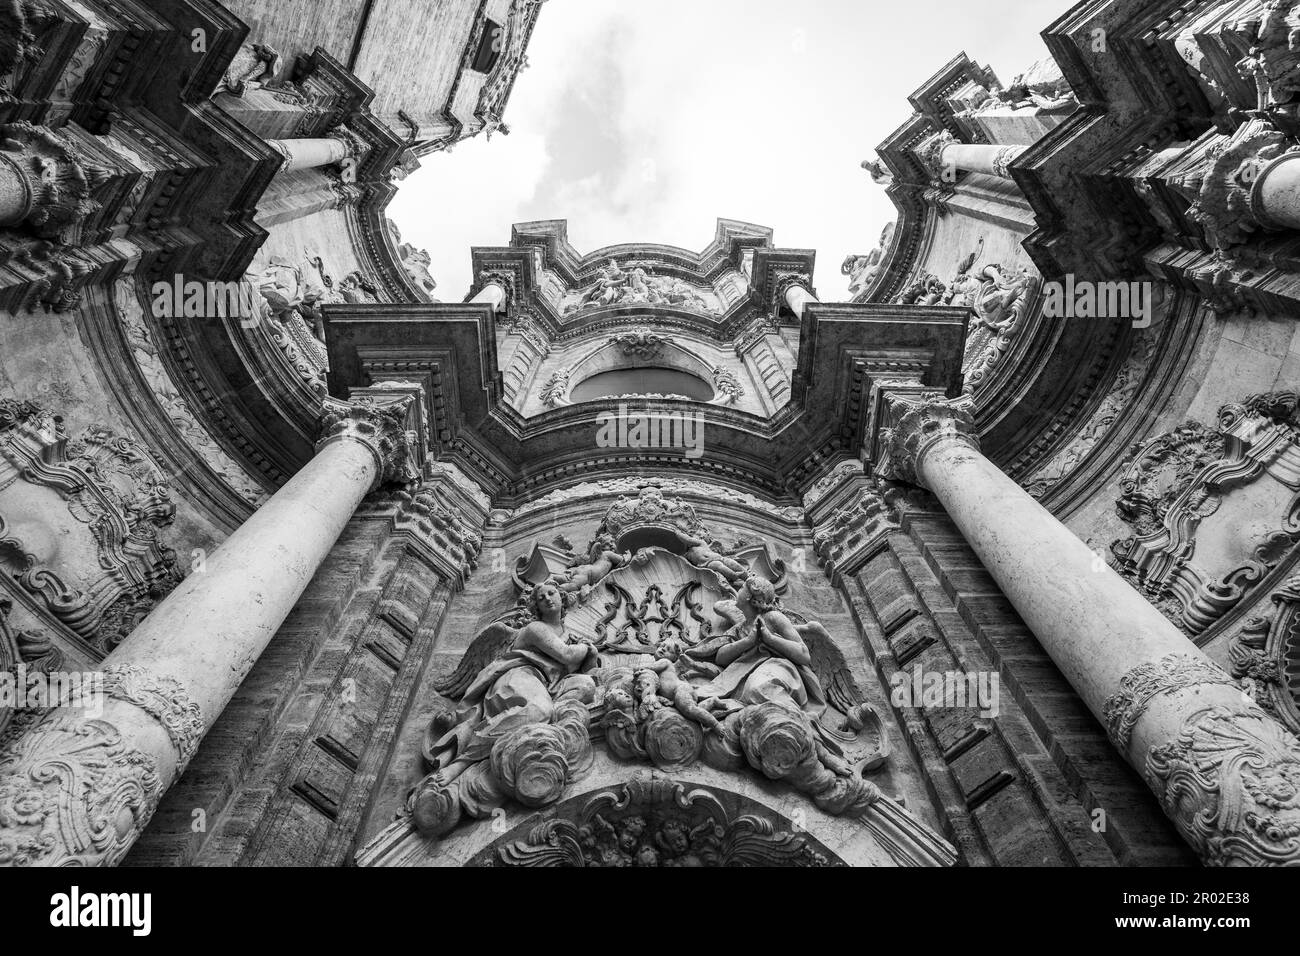 Spanien, Valencia. Detail der Kathedrale - Basilika Mariä Himmelfahrt unserer lieben Frau von Valencia Stockfoto